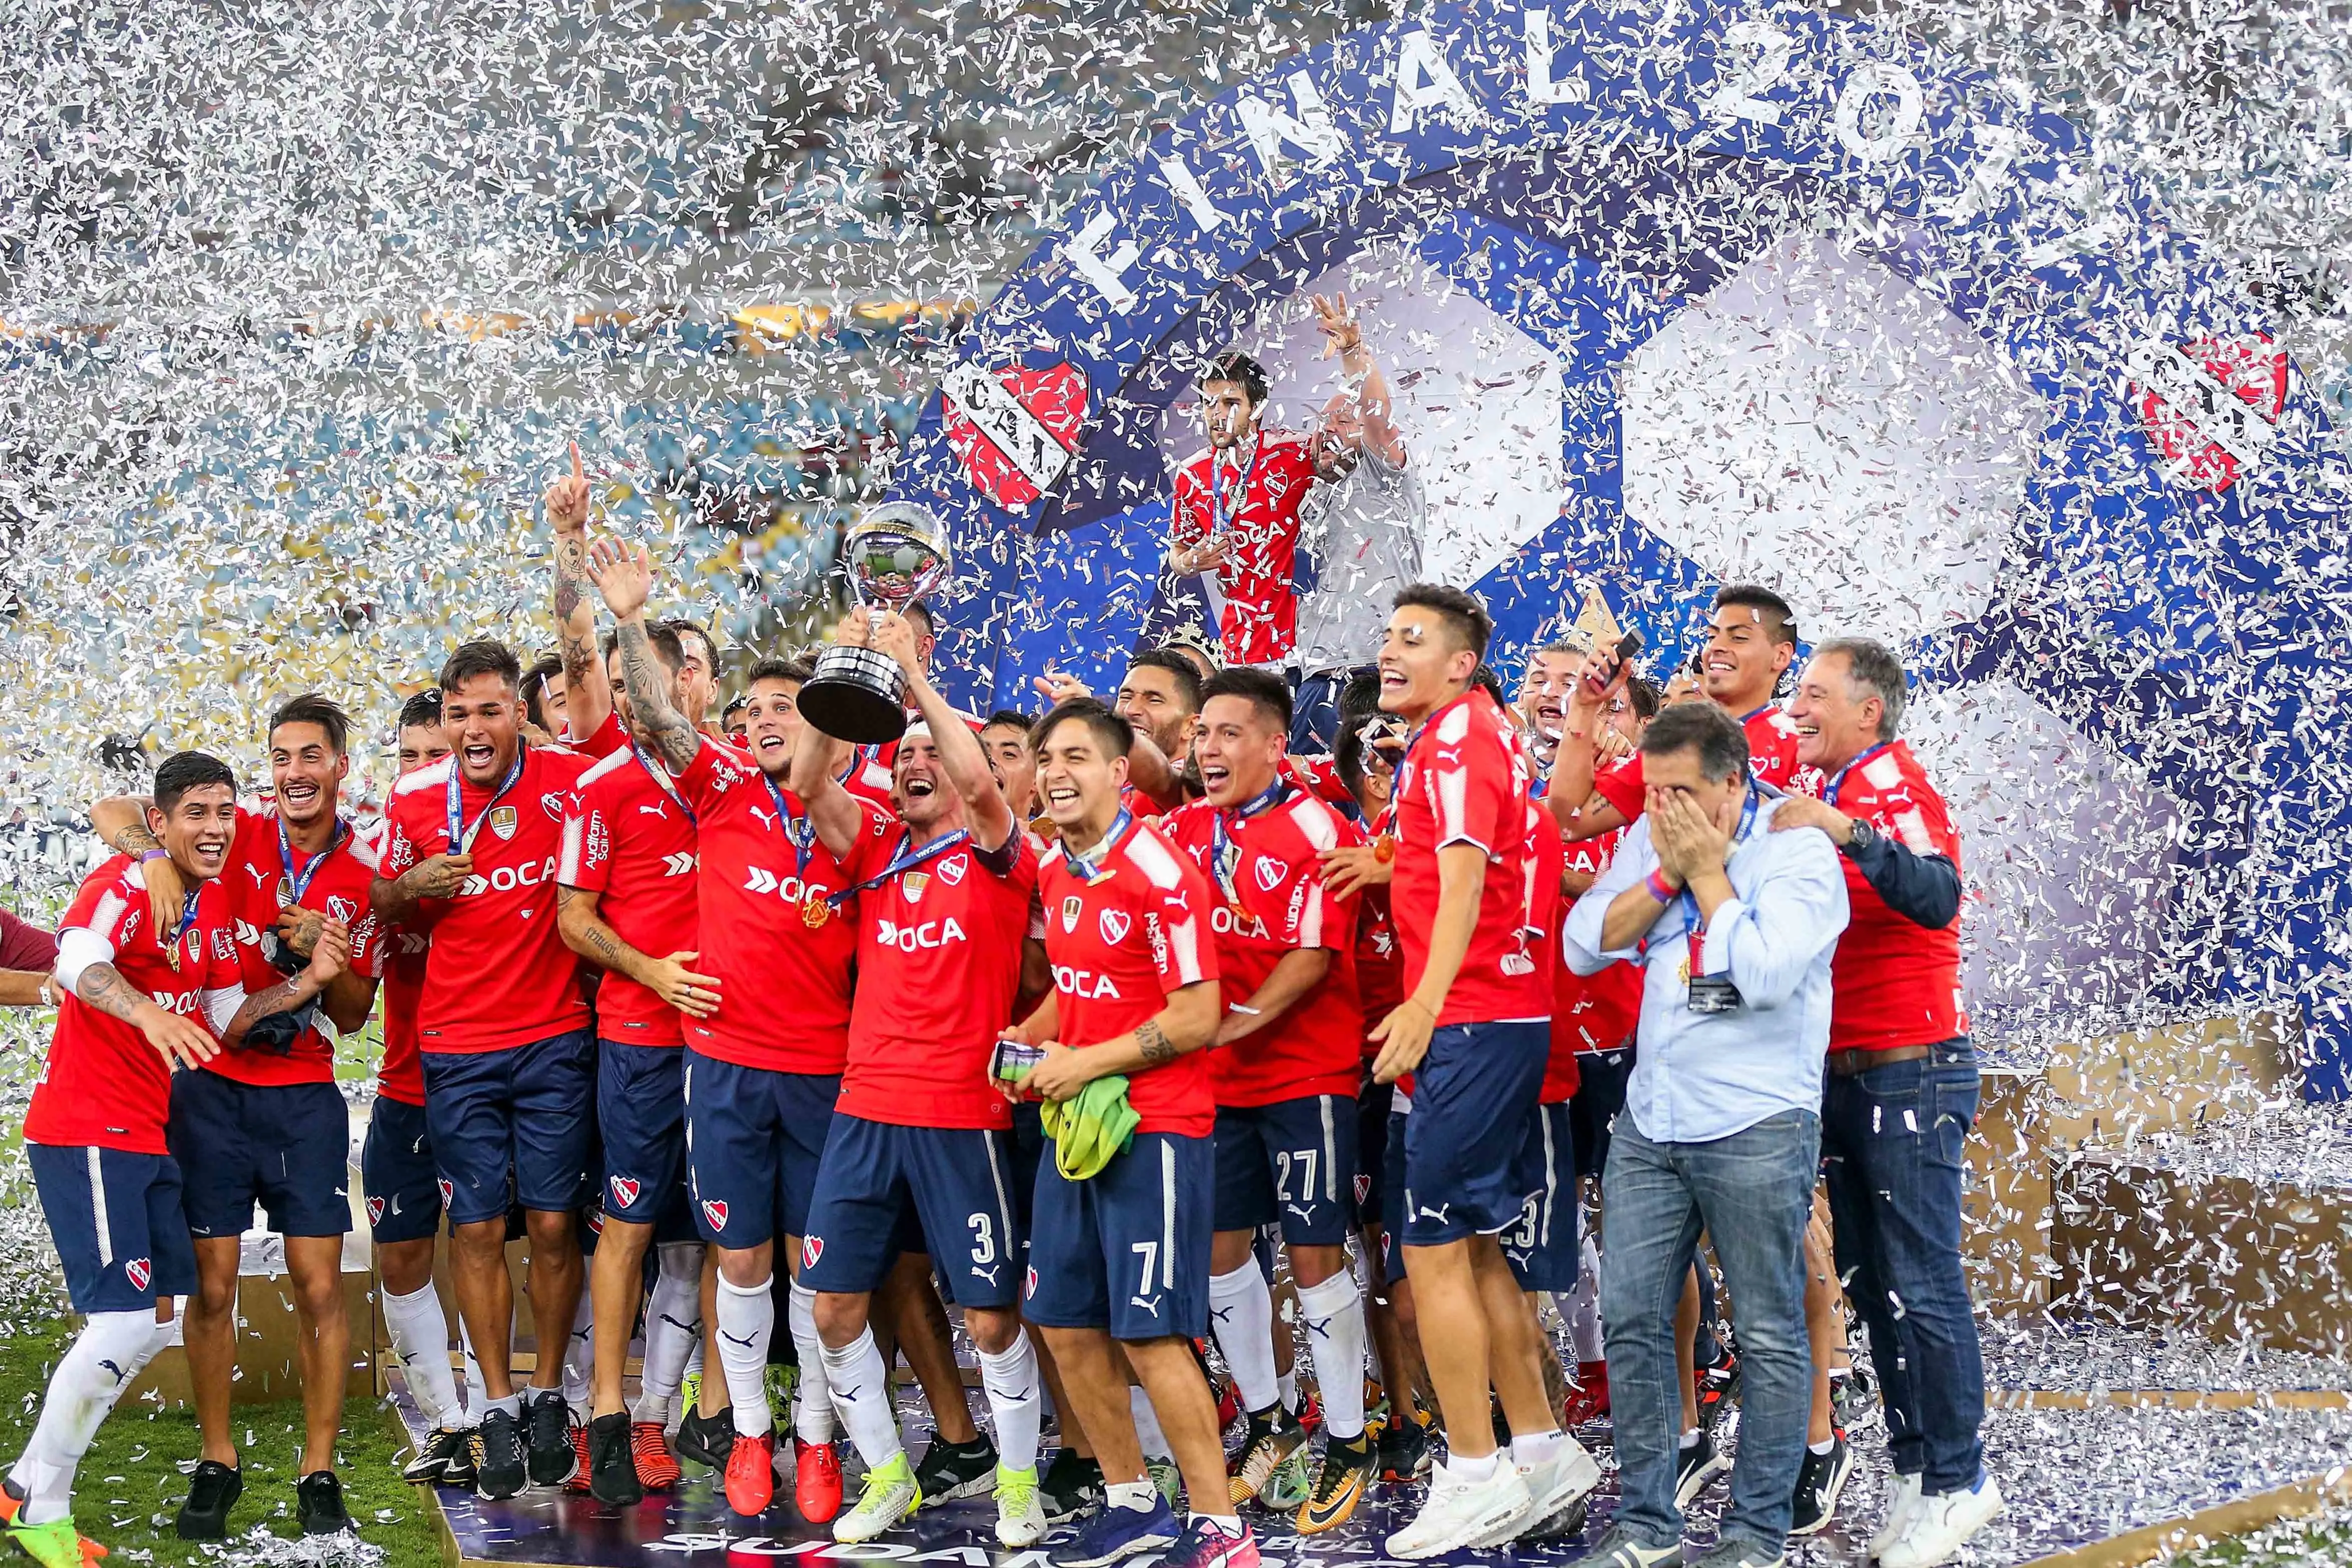 Independiente remporte la Copa Sudamericana